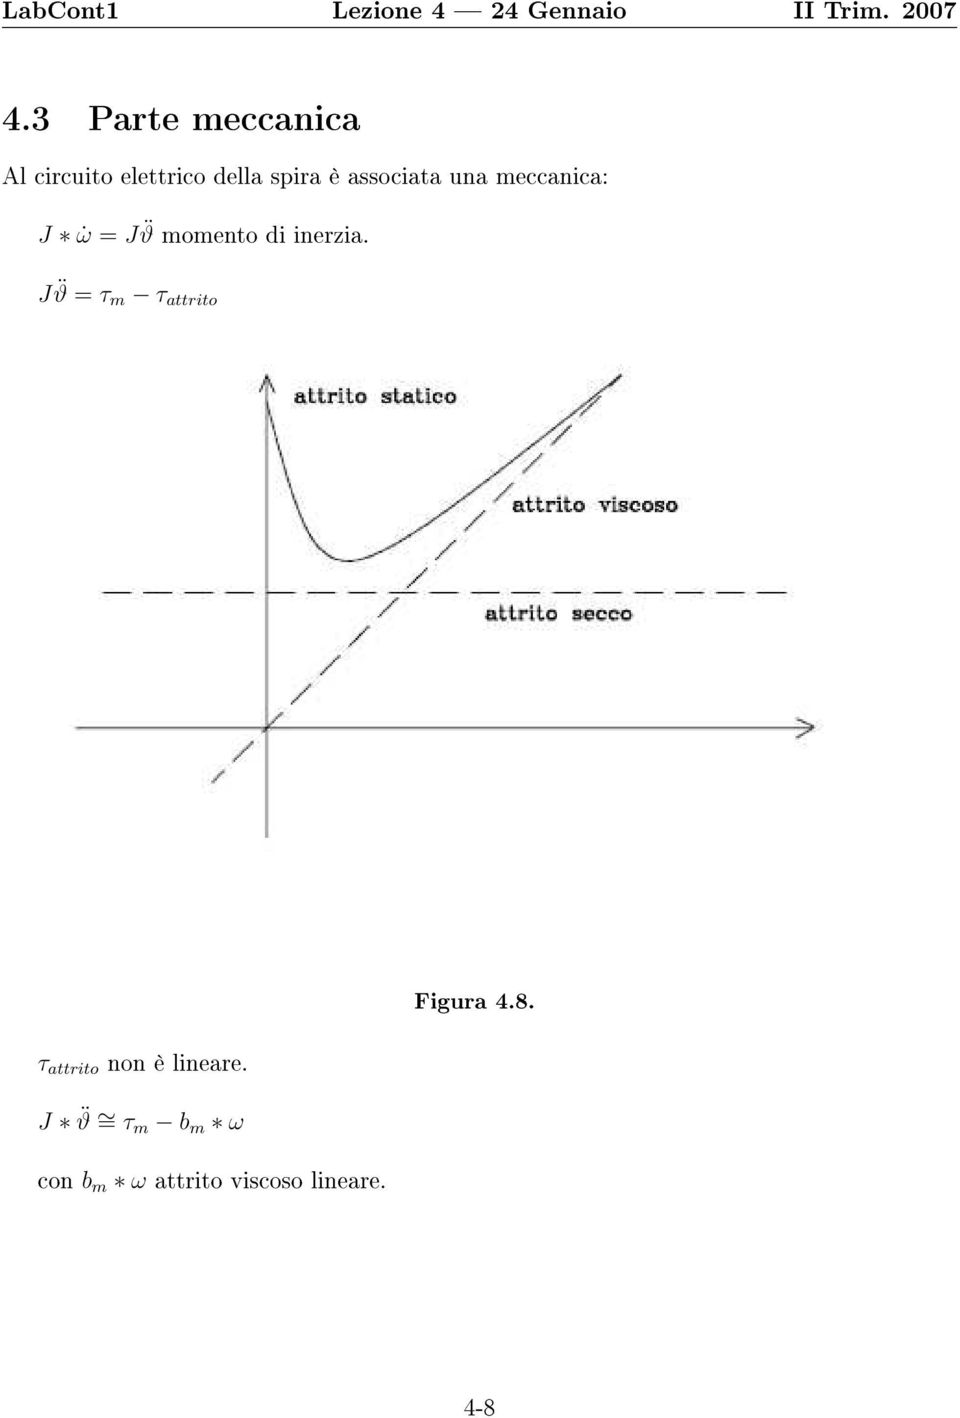 J ϑ = τ m τ attrito τ attrito non è lineare. Figura 4.8.